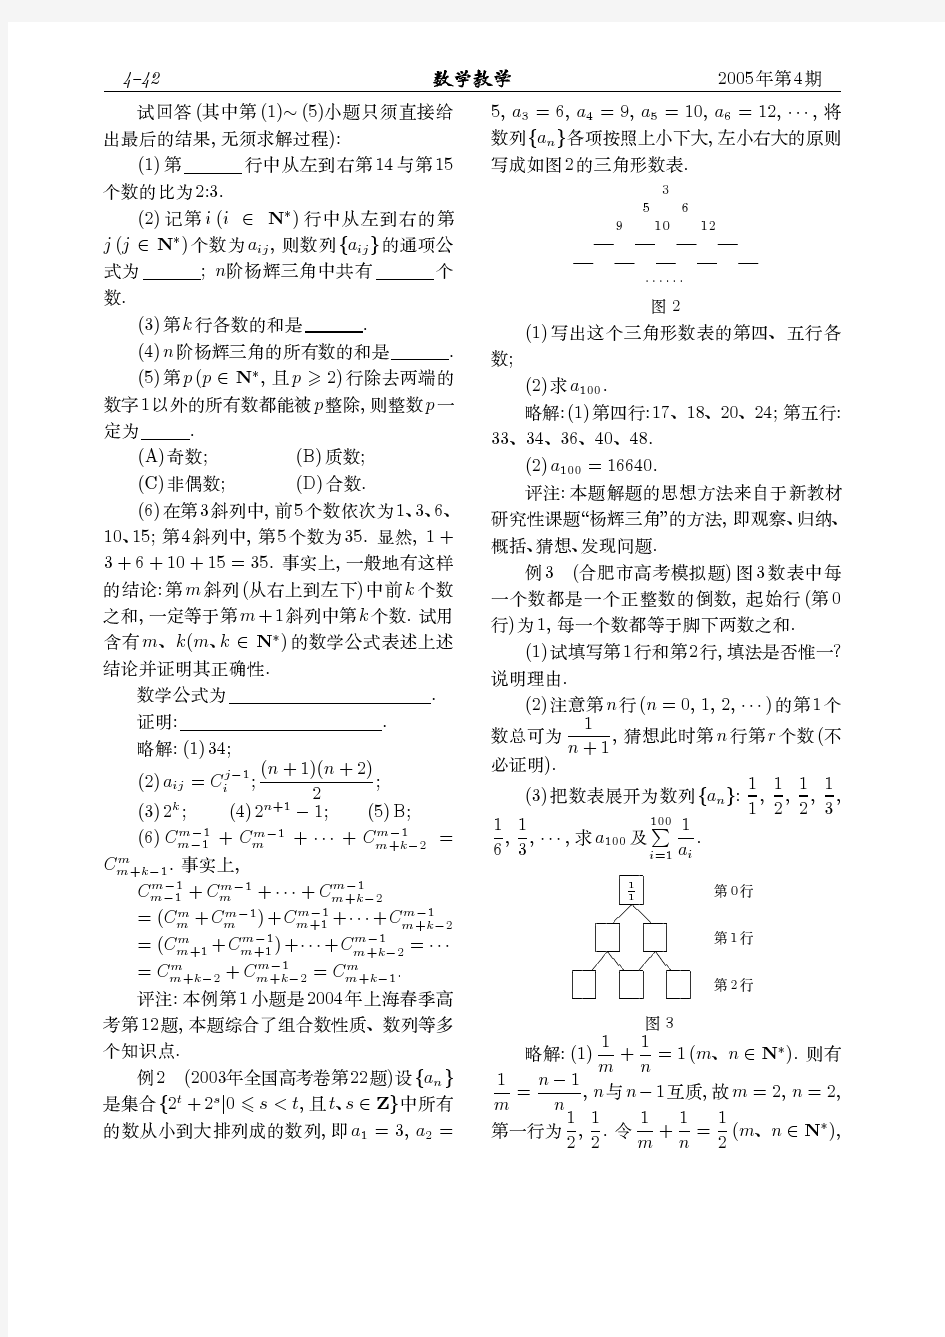 以杨辉三角为背景的试题例析